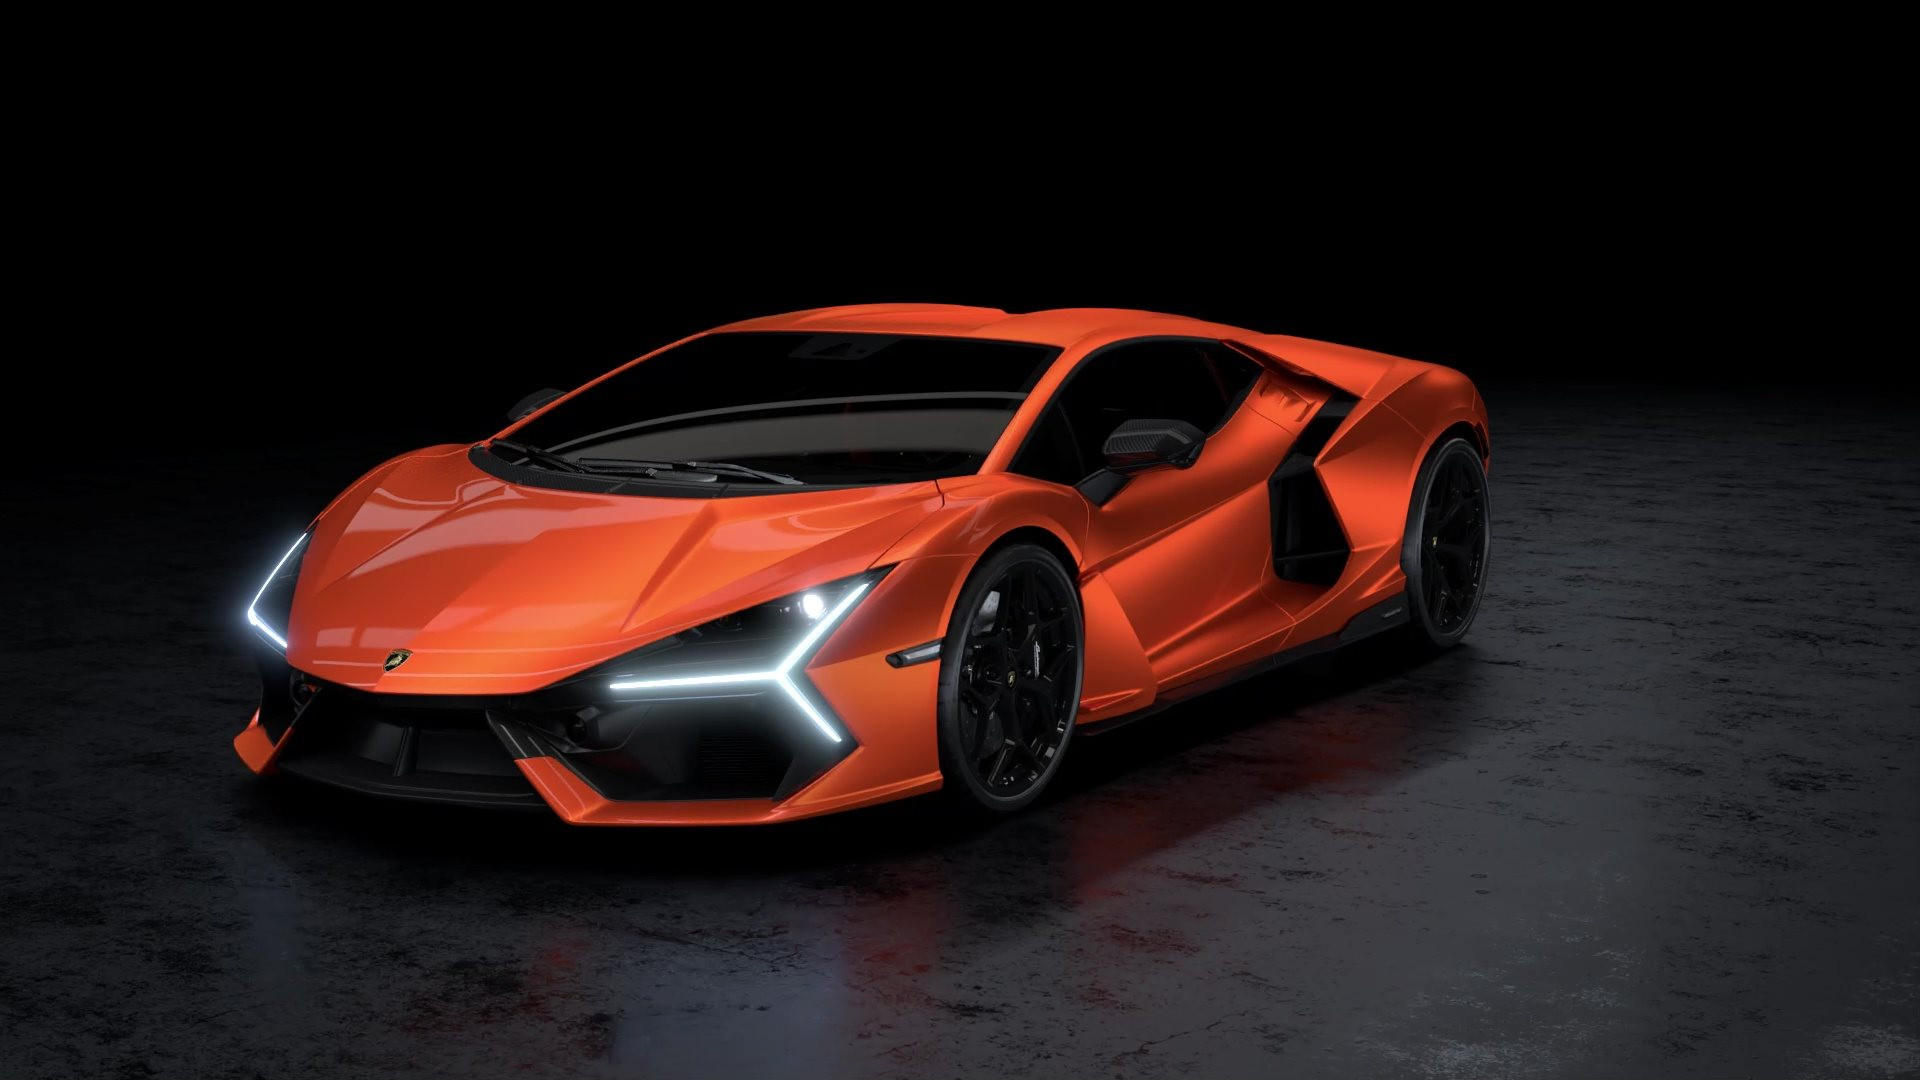 Siêu xe 21 tỷ đồng của Lamborghini có gì hot mà cháy hàng đến hết năm 2025, người giàu đến mấy cũng phải tranh nhau xếp hàng? - Ảnh 2.